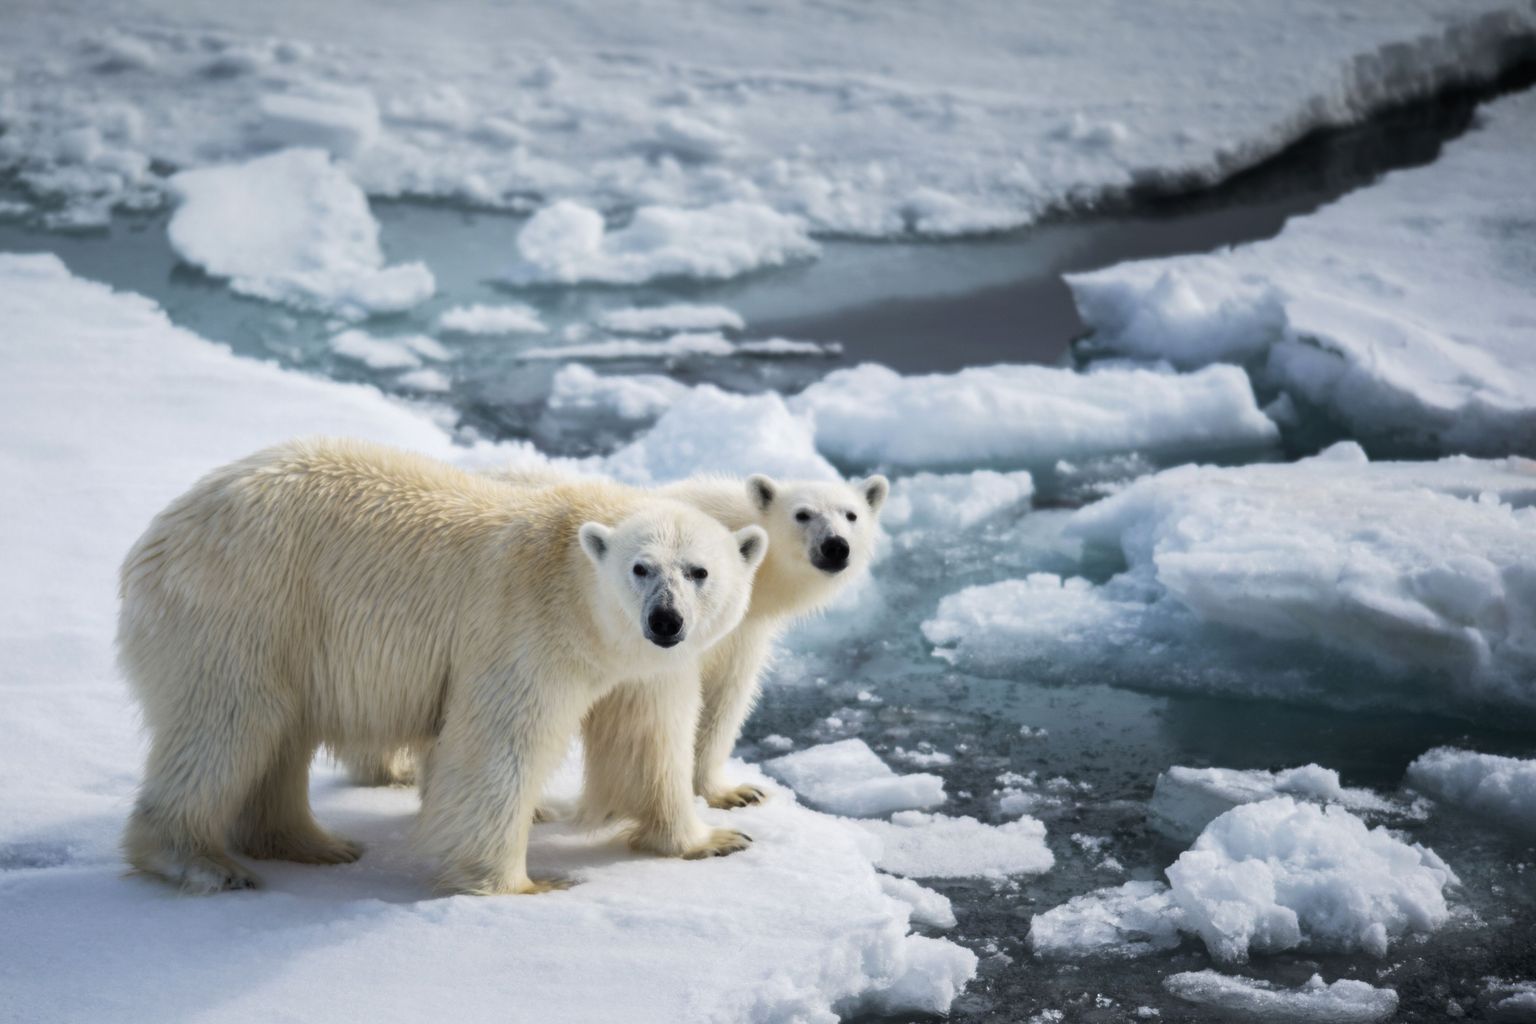 Jääkaru koos pojaga Franz Josephi maa lähedal. Arktilise merejää sulamine tekitab jääkarudele raskusi hüljeste küttimisel.